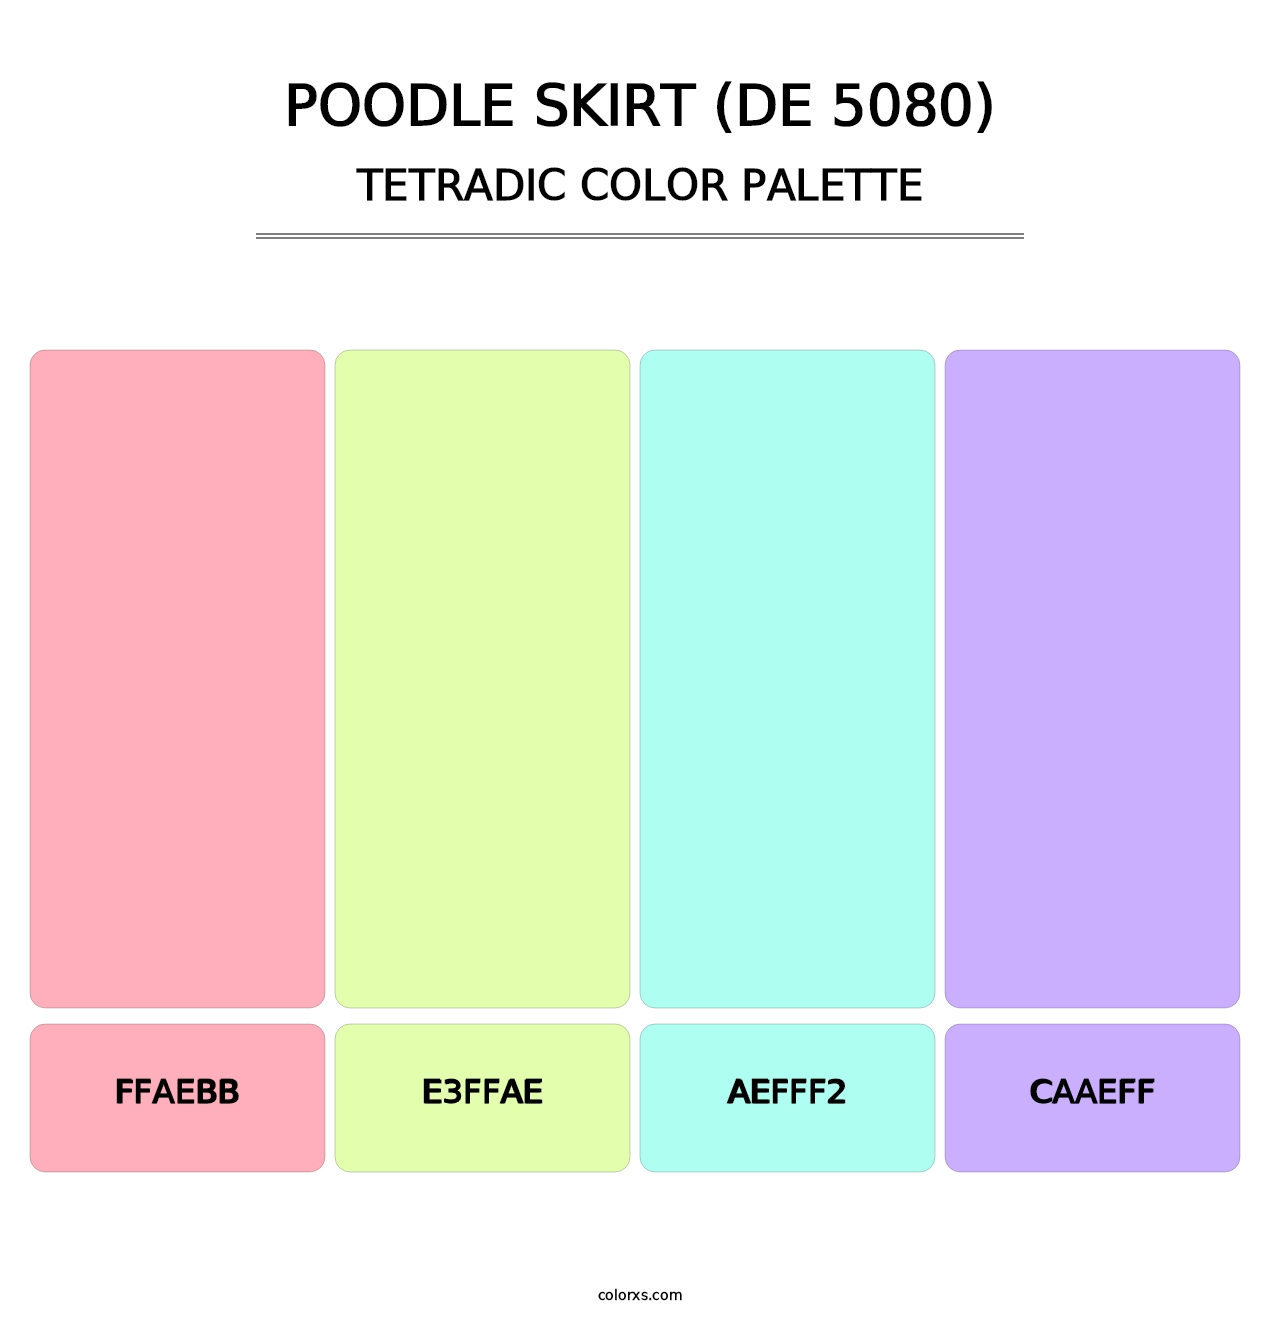 Poodle Skirt (DE 5080) - Tetradic Color Palette